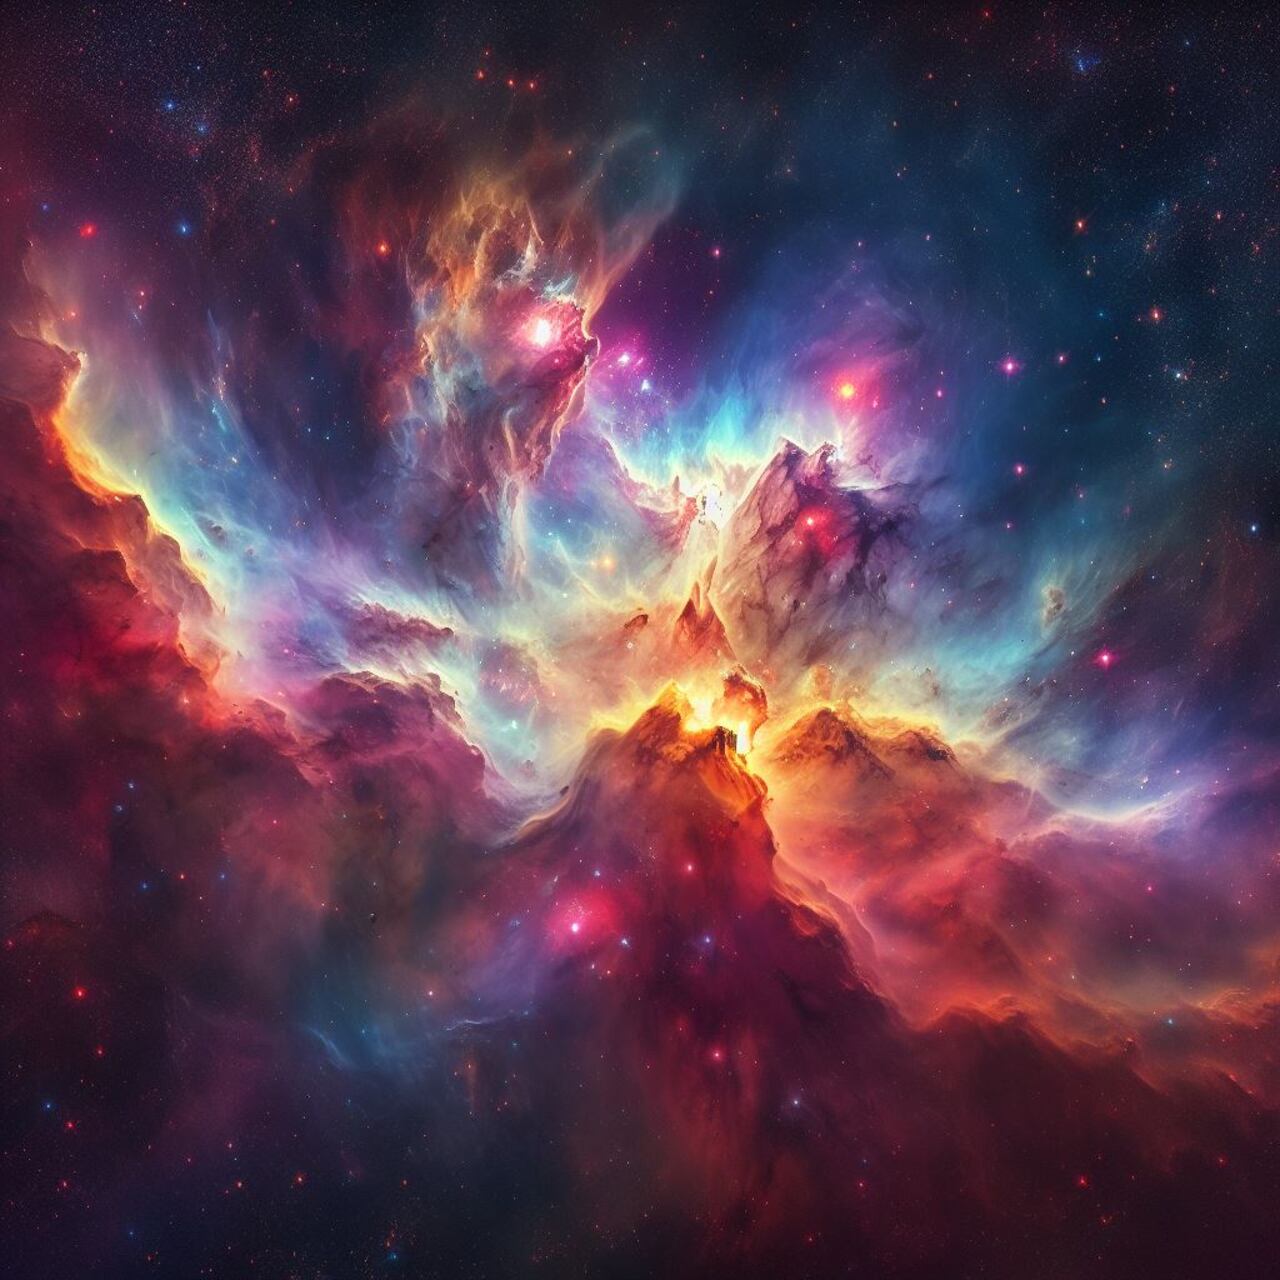 Imagen de referencia de la Nebulosa de Orión.